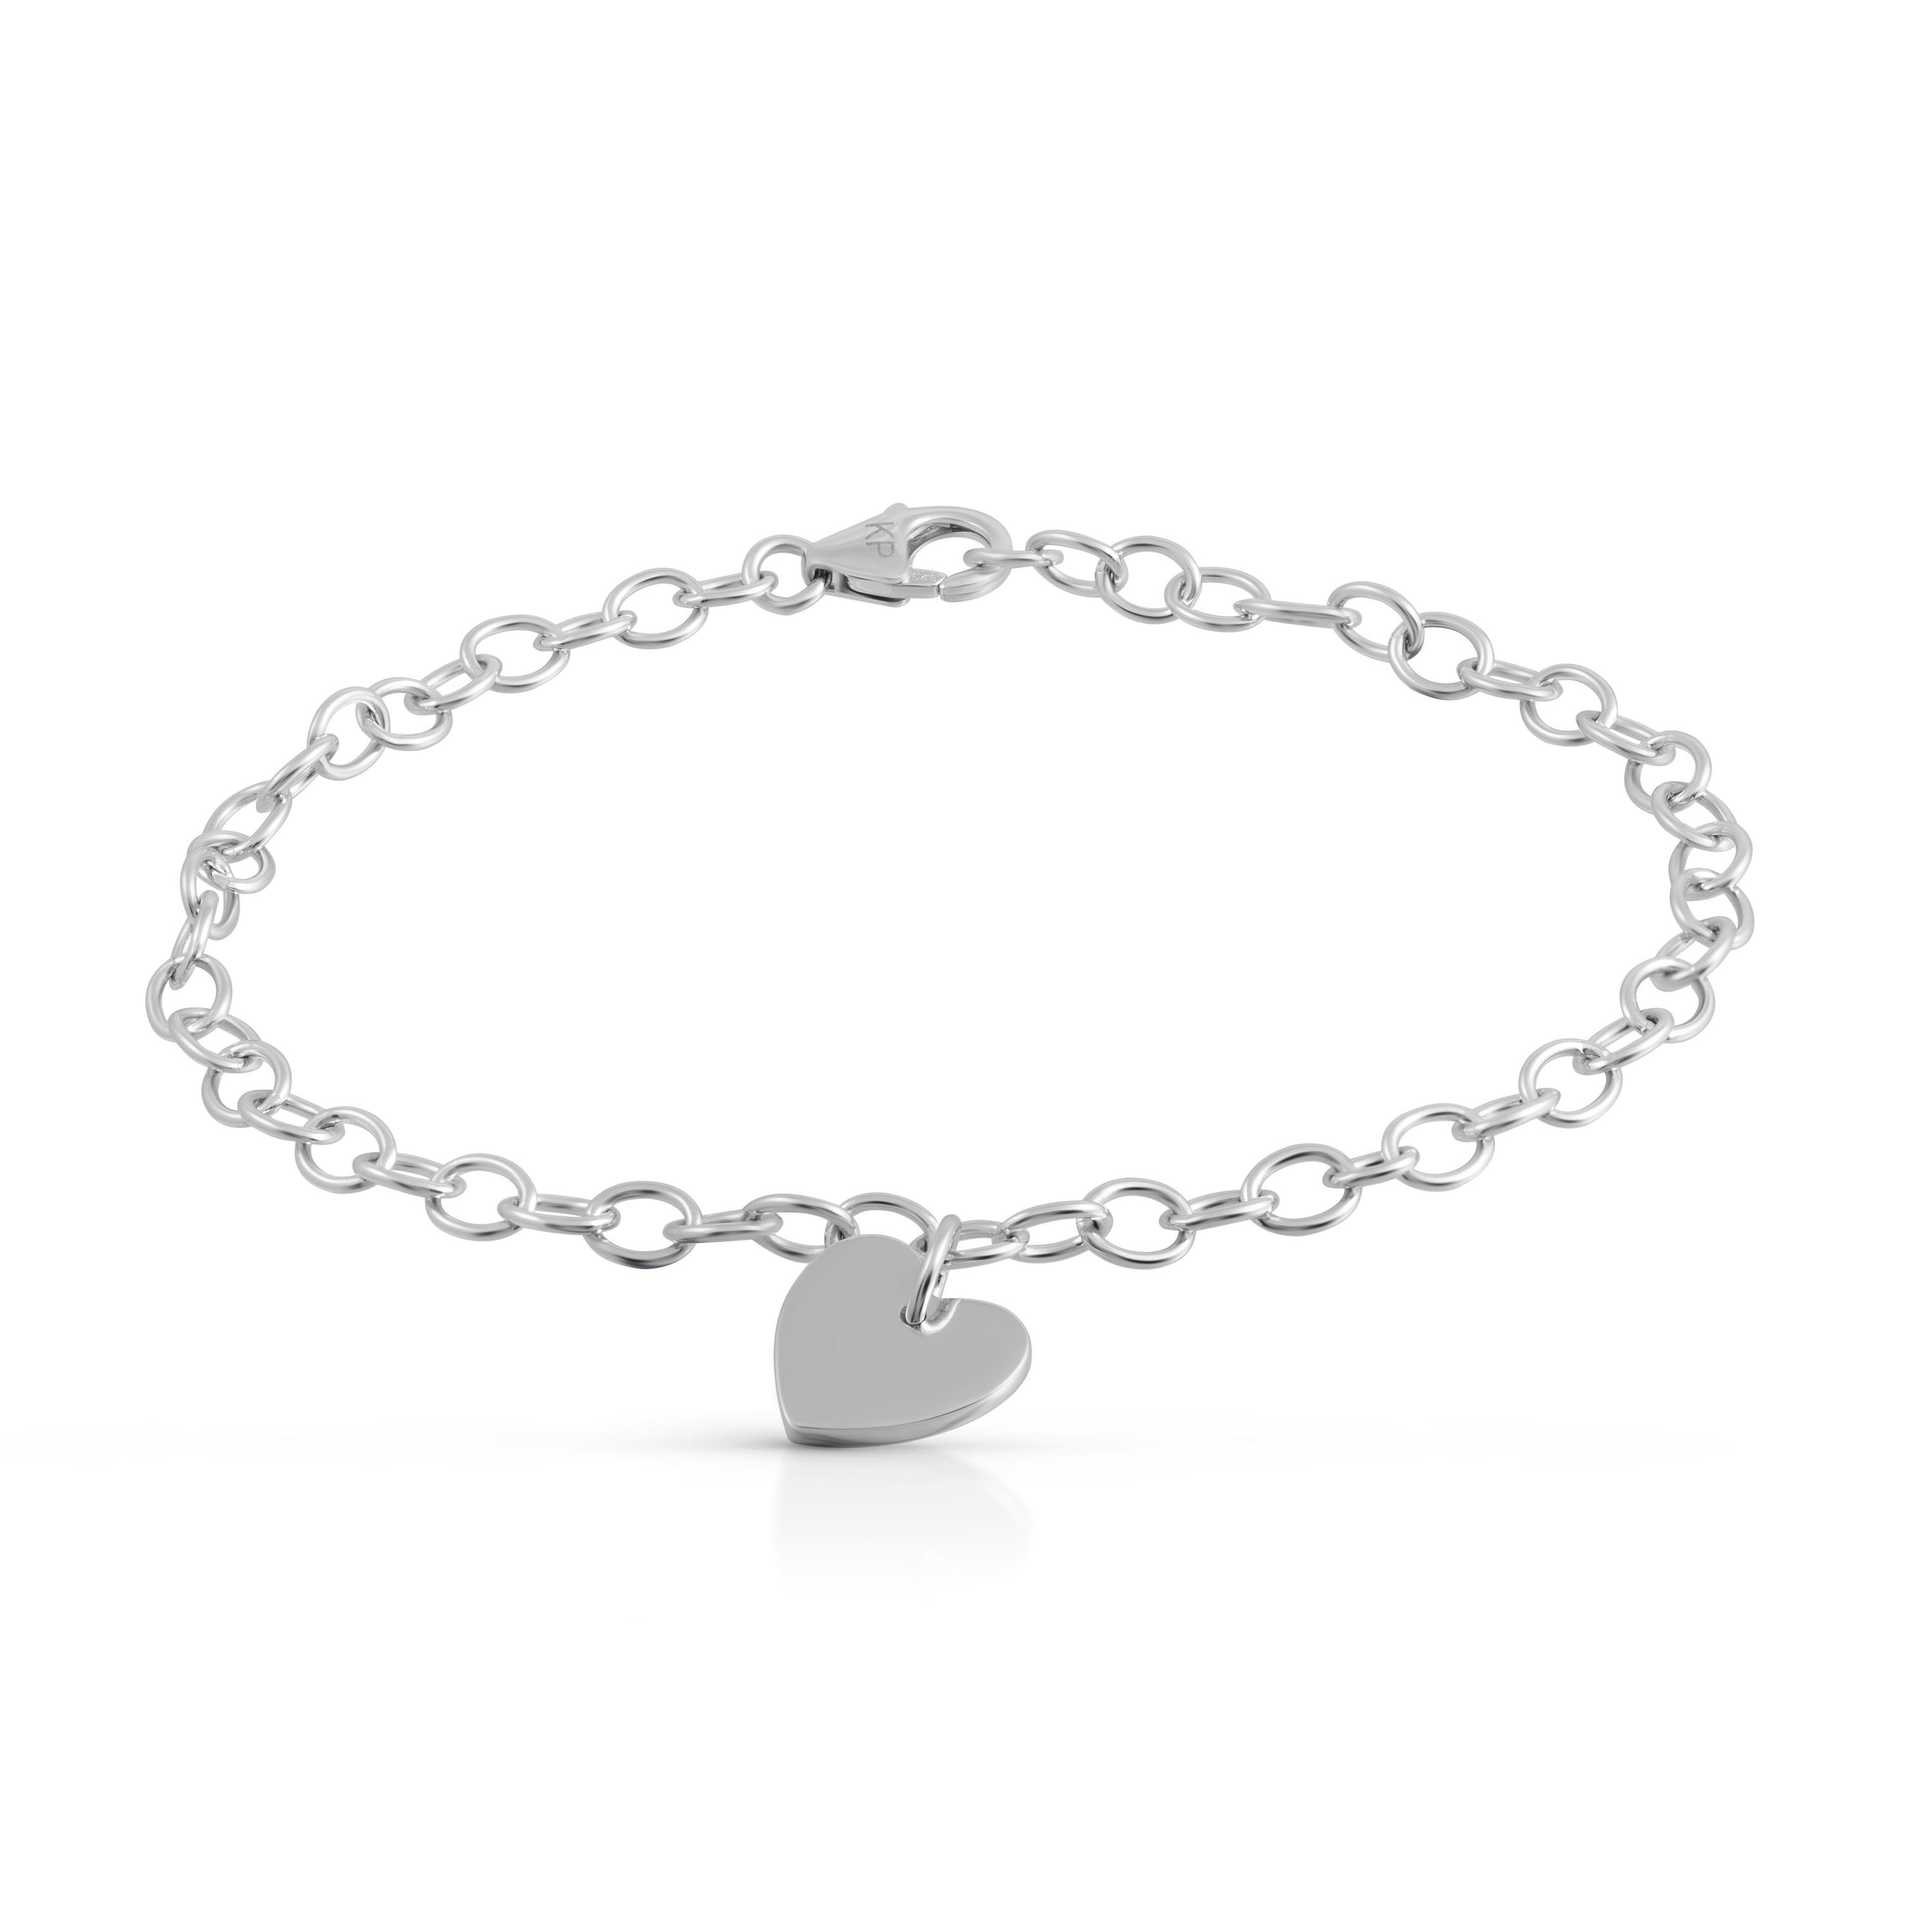 Vivance Armband 925 Silber rhodiniert mit Herz Motiv | Silberarmbänder